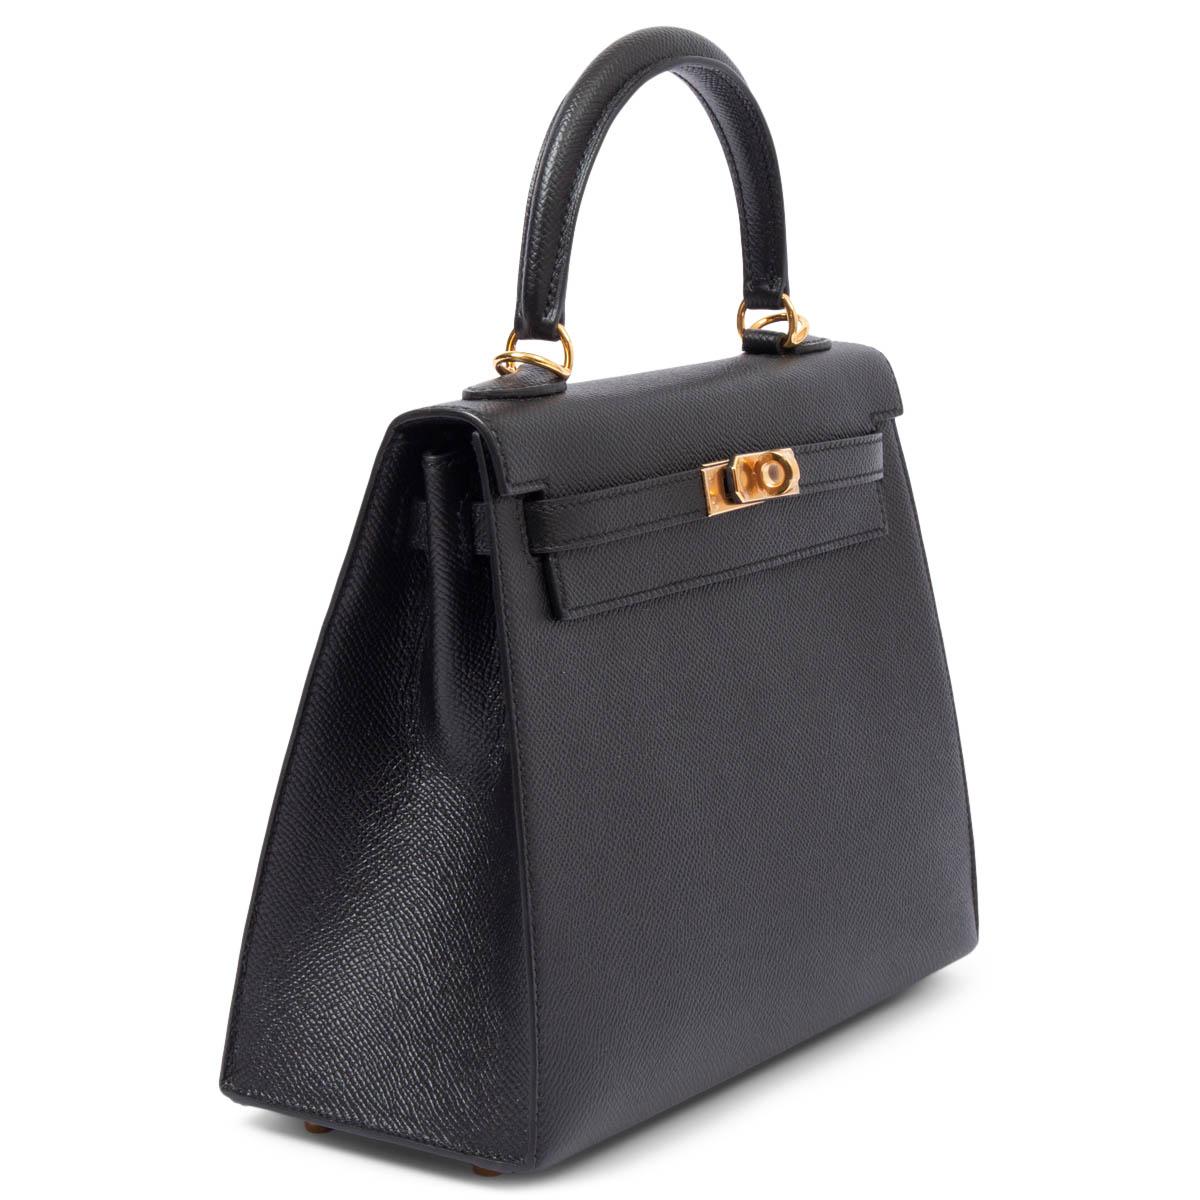 Holy Grail* Hermes Kelly 25 Sellier Handbag Black Epsom Leather